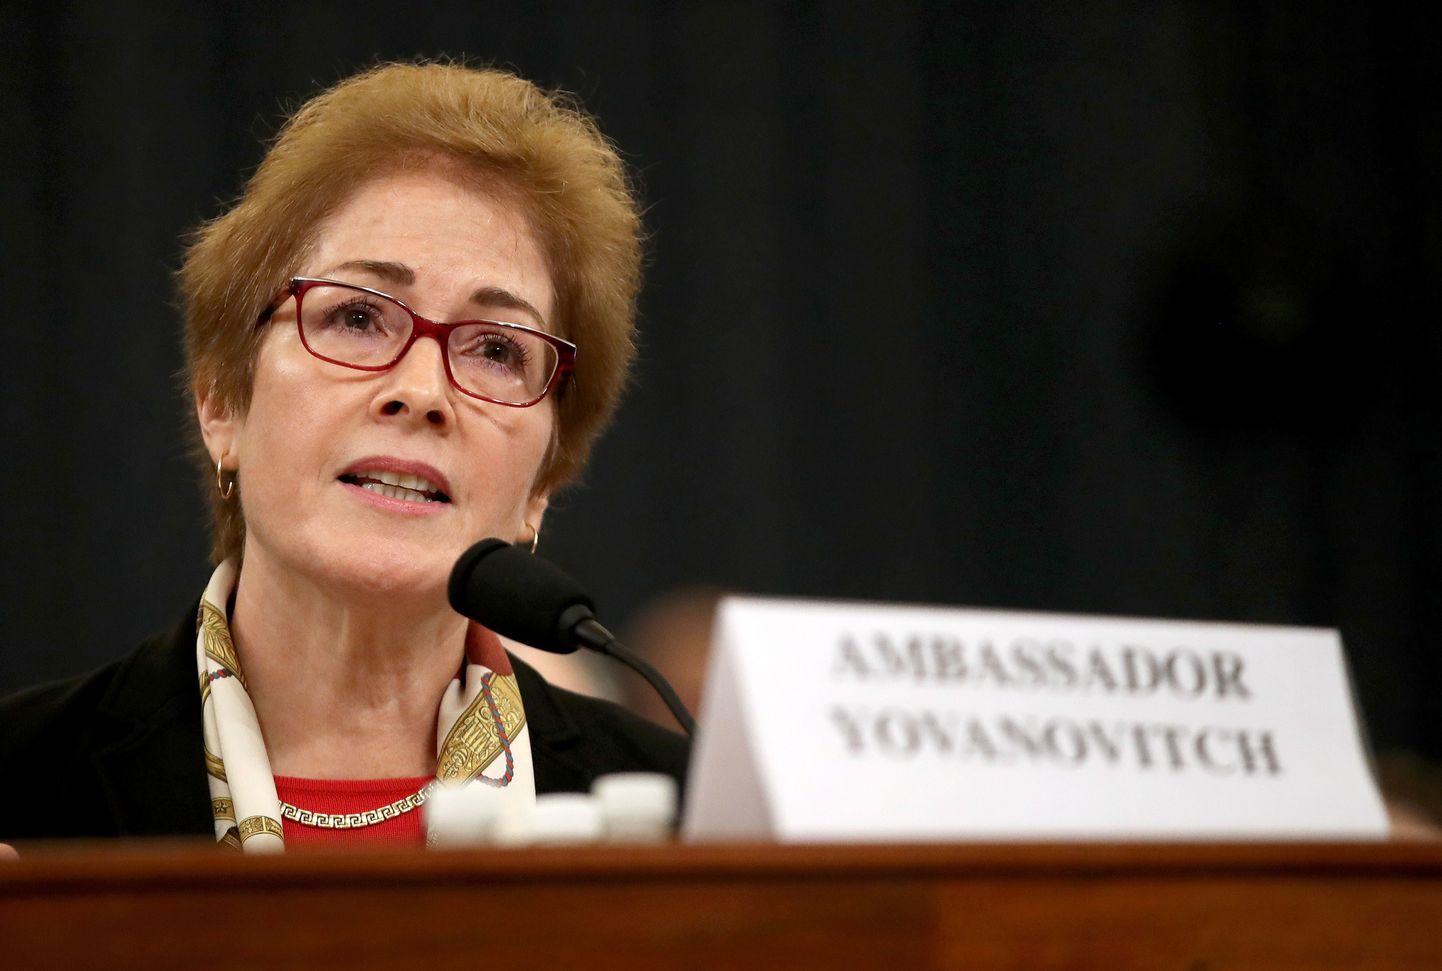 USA endine suursaadik Ukrainas Marie Yovanovitch kongressikomitees president Donald Trumpi tagandamisjuurdluses tunnistusi andmas.